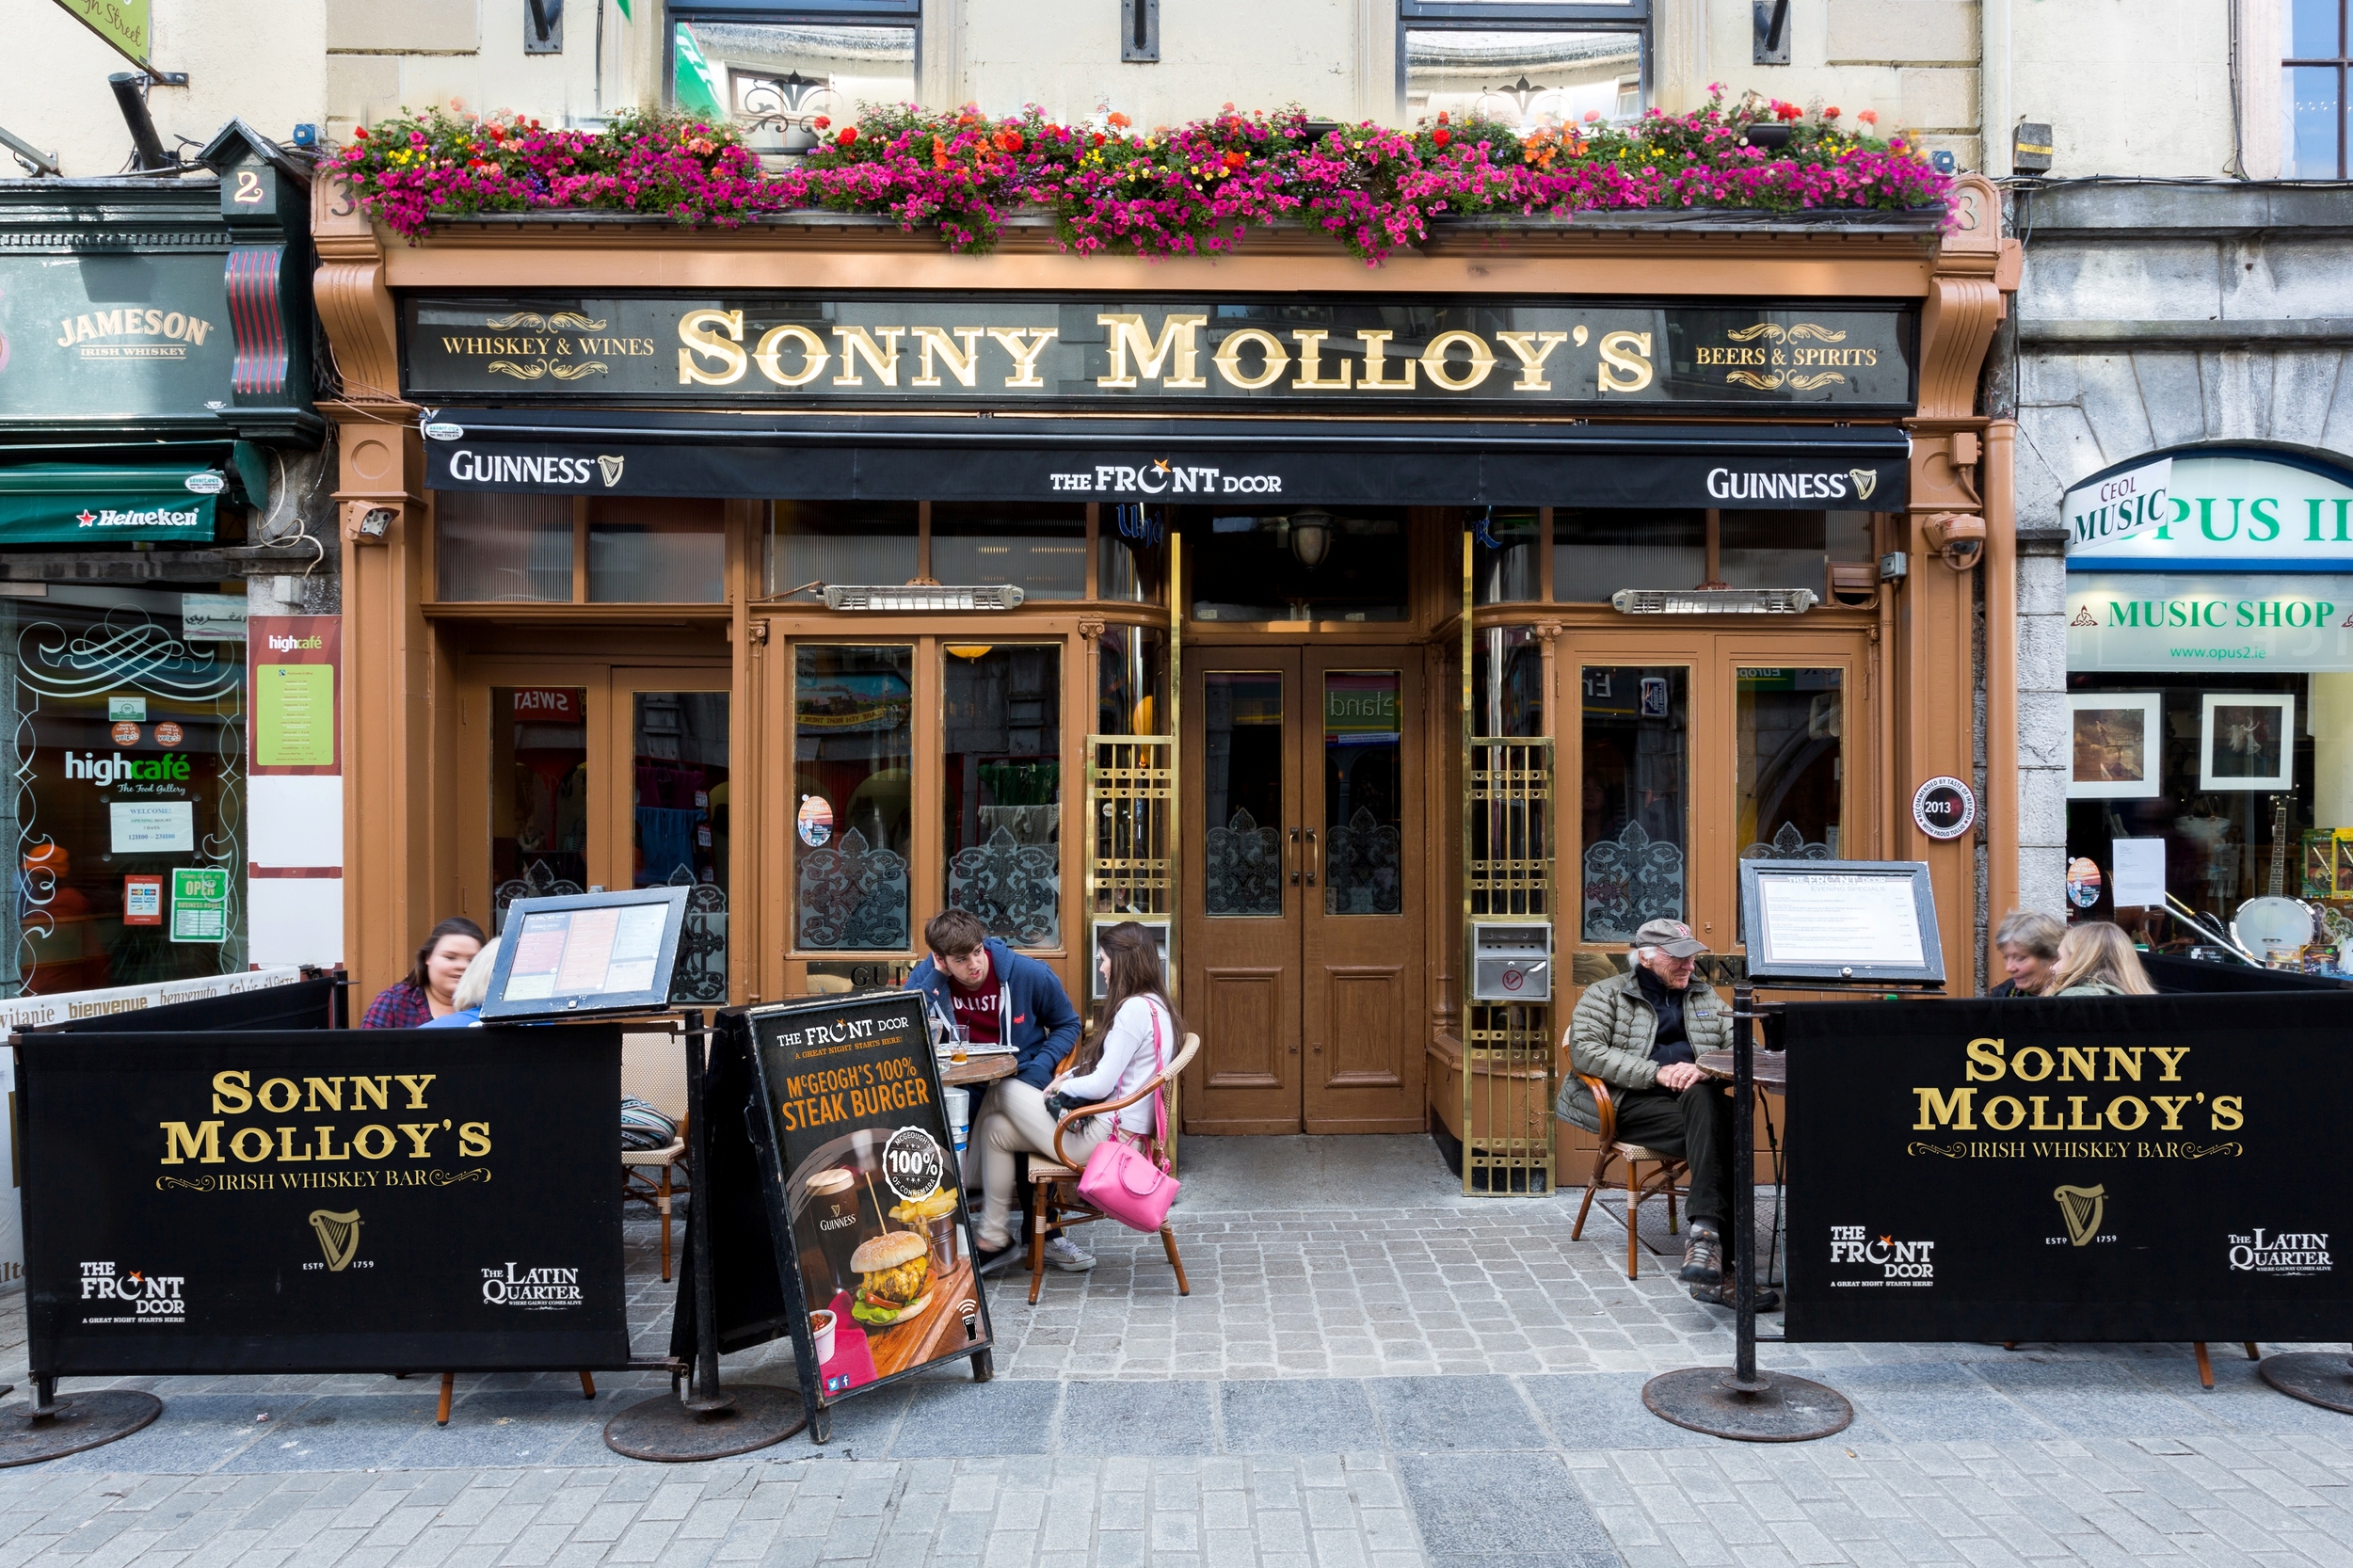 Sonny Molloy's